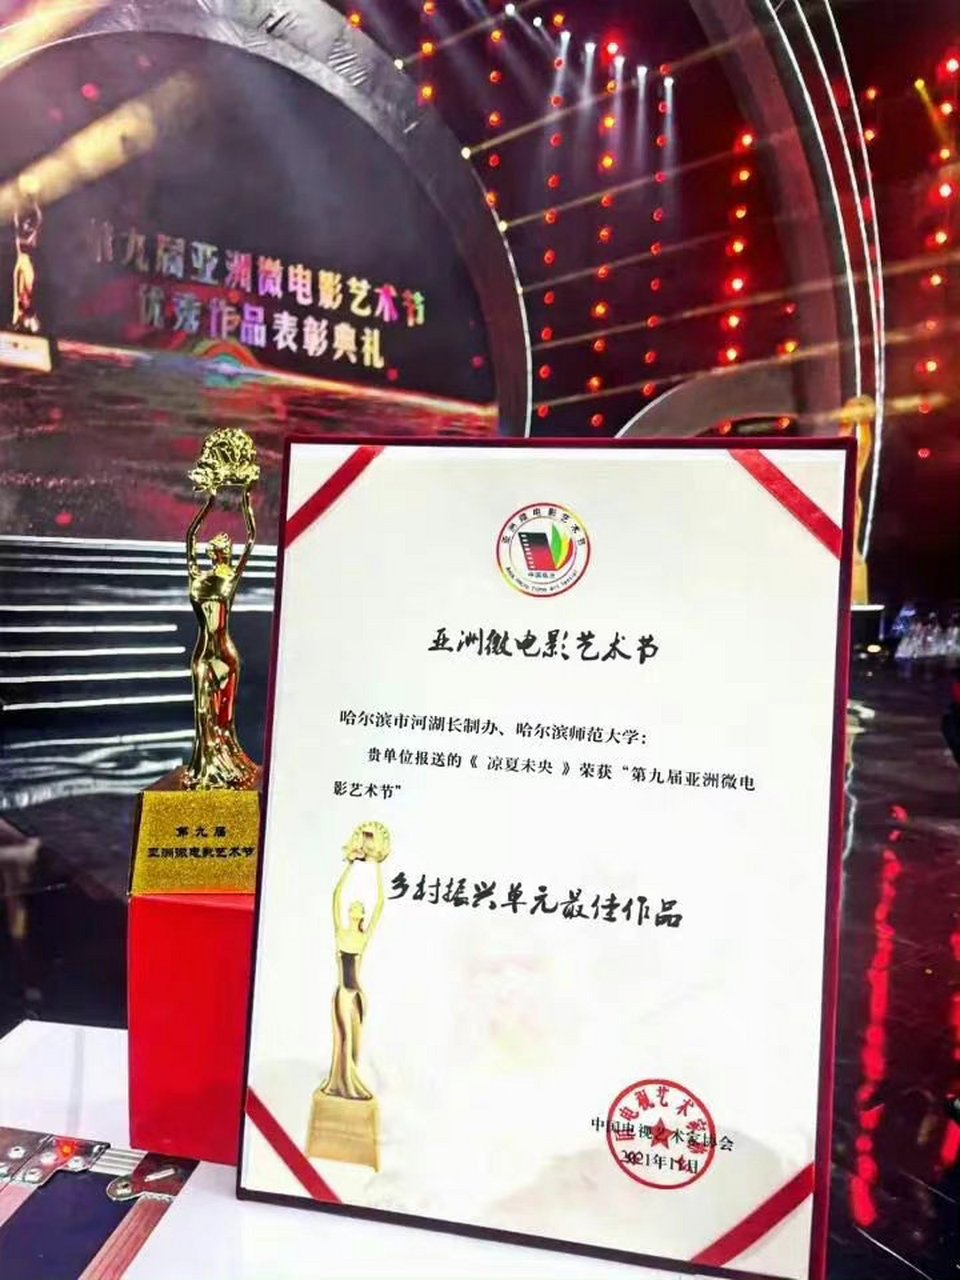 近日,由我校传媒学院师生团队创作的微电影《凉夏未央》荣获中国电视